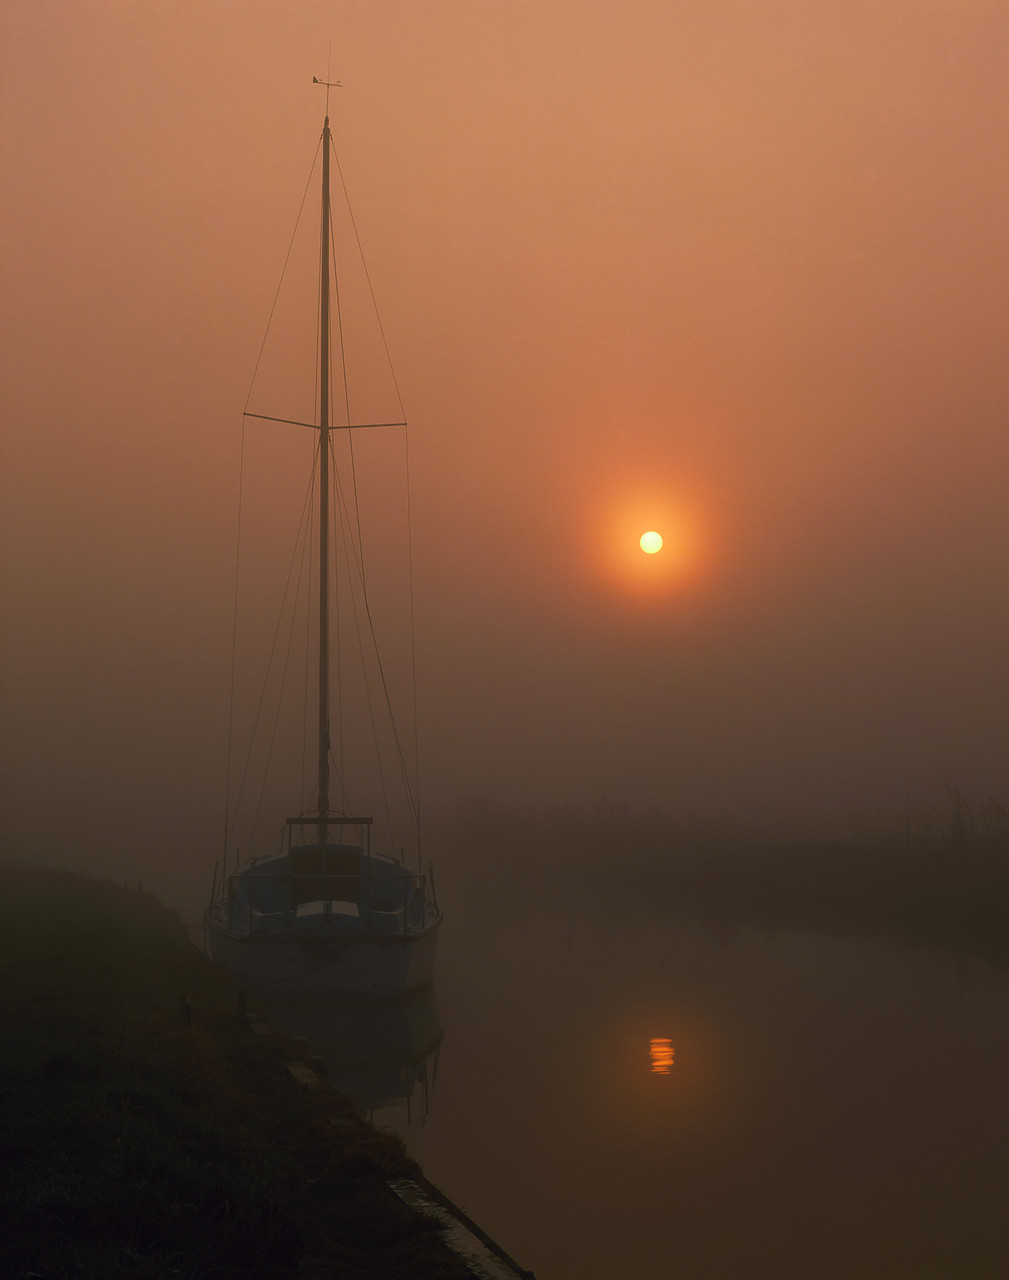 #902717-2 - Foggy Sunrise & Sailboat, Upton Dyke, Norfolk, England